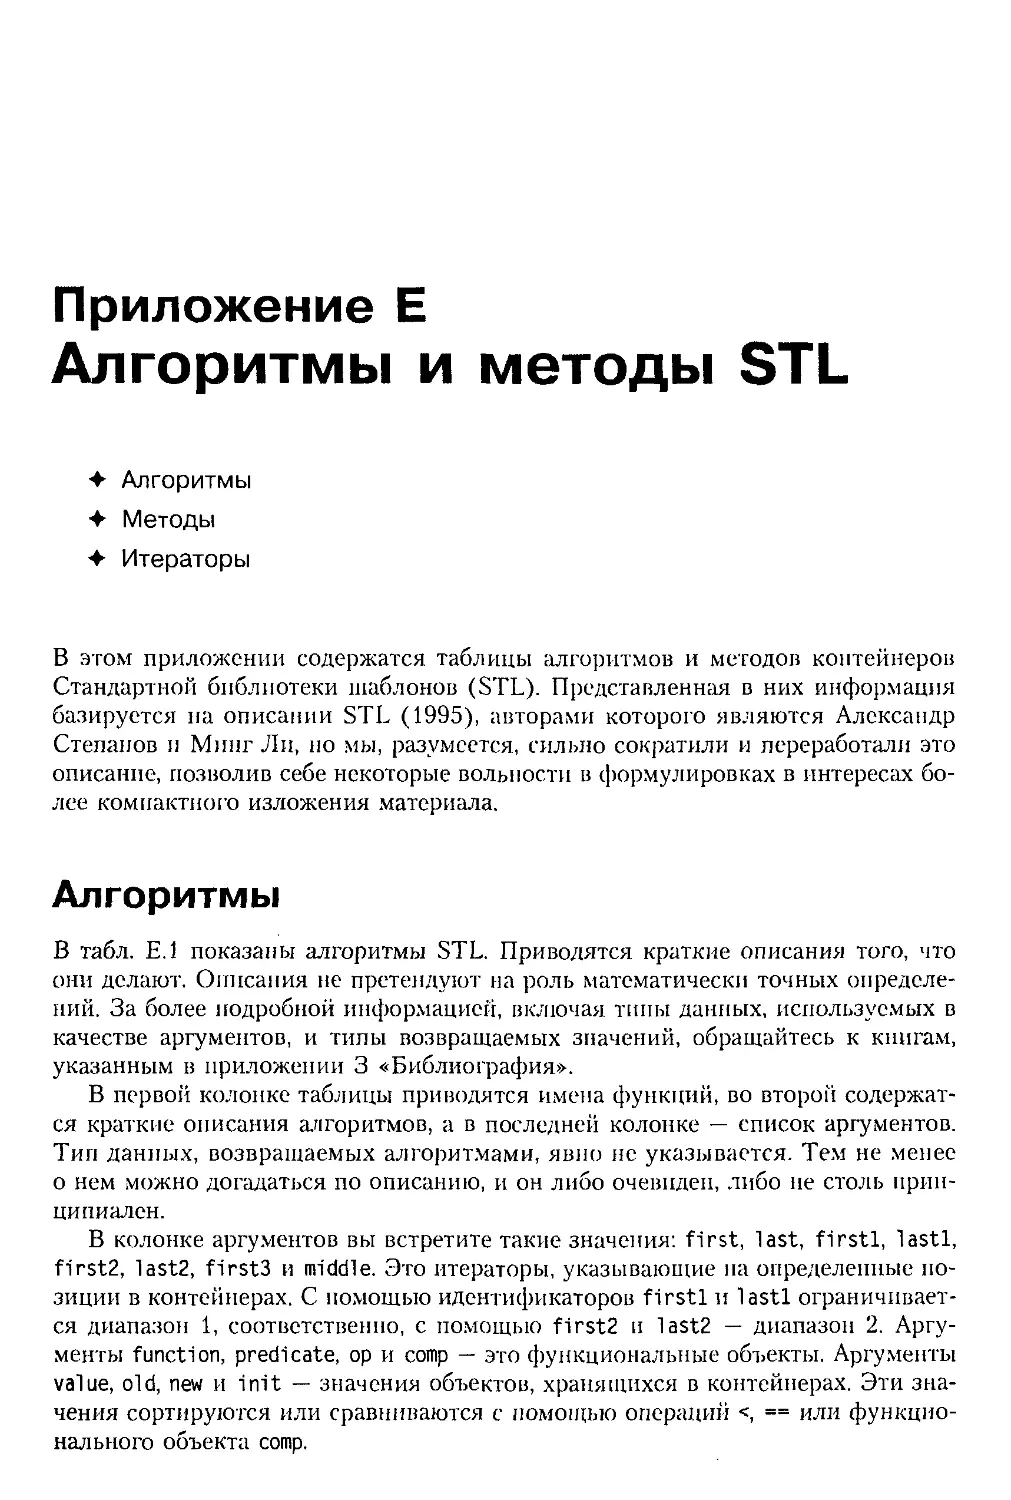 Приложение Е. Алгоритмы и методы STL